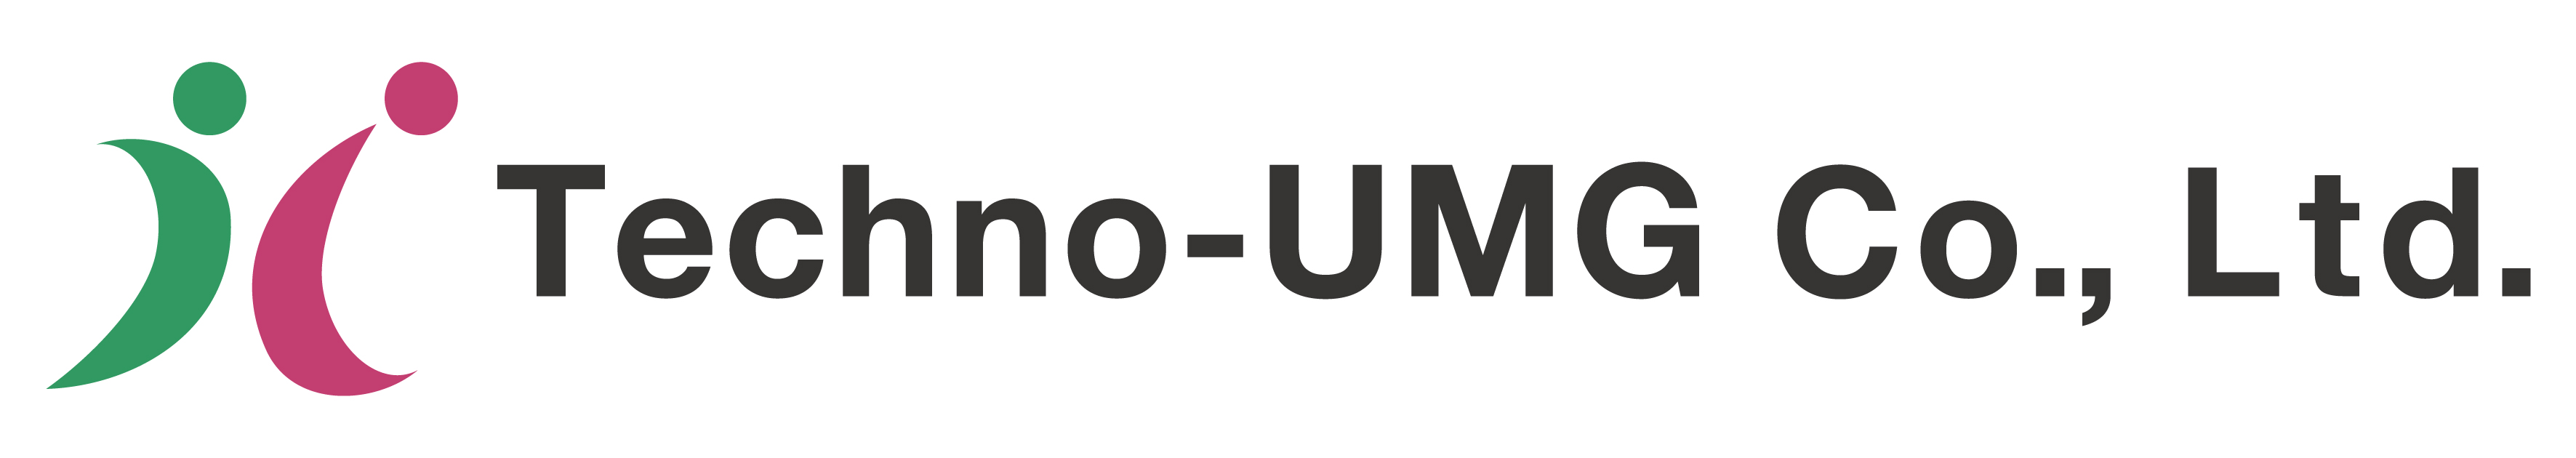 Techno-UMG Co., Ltd.